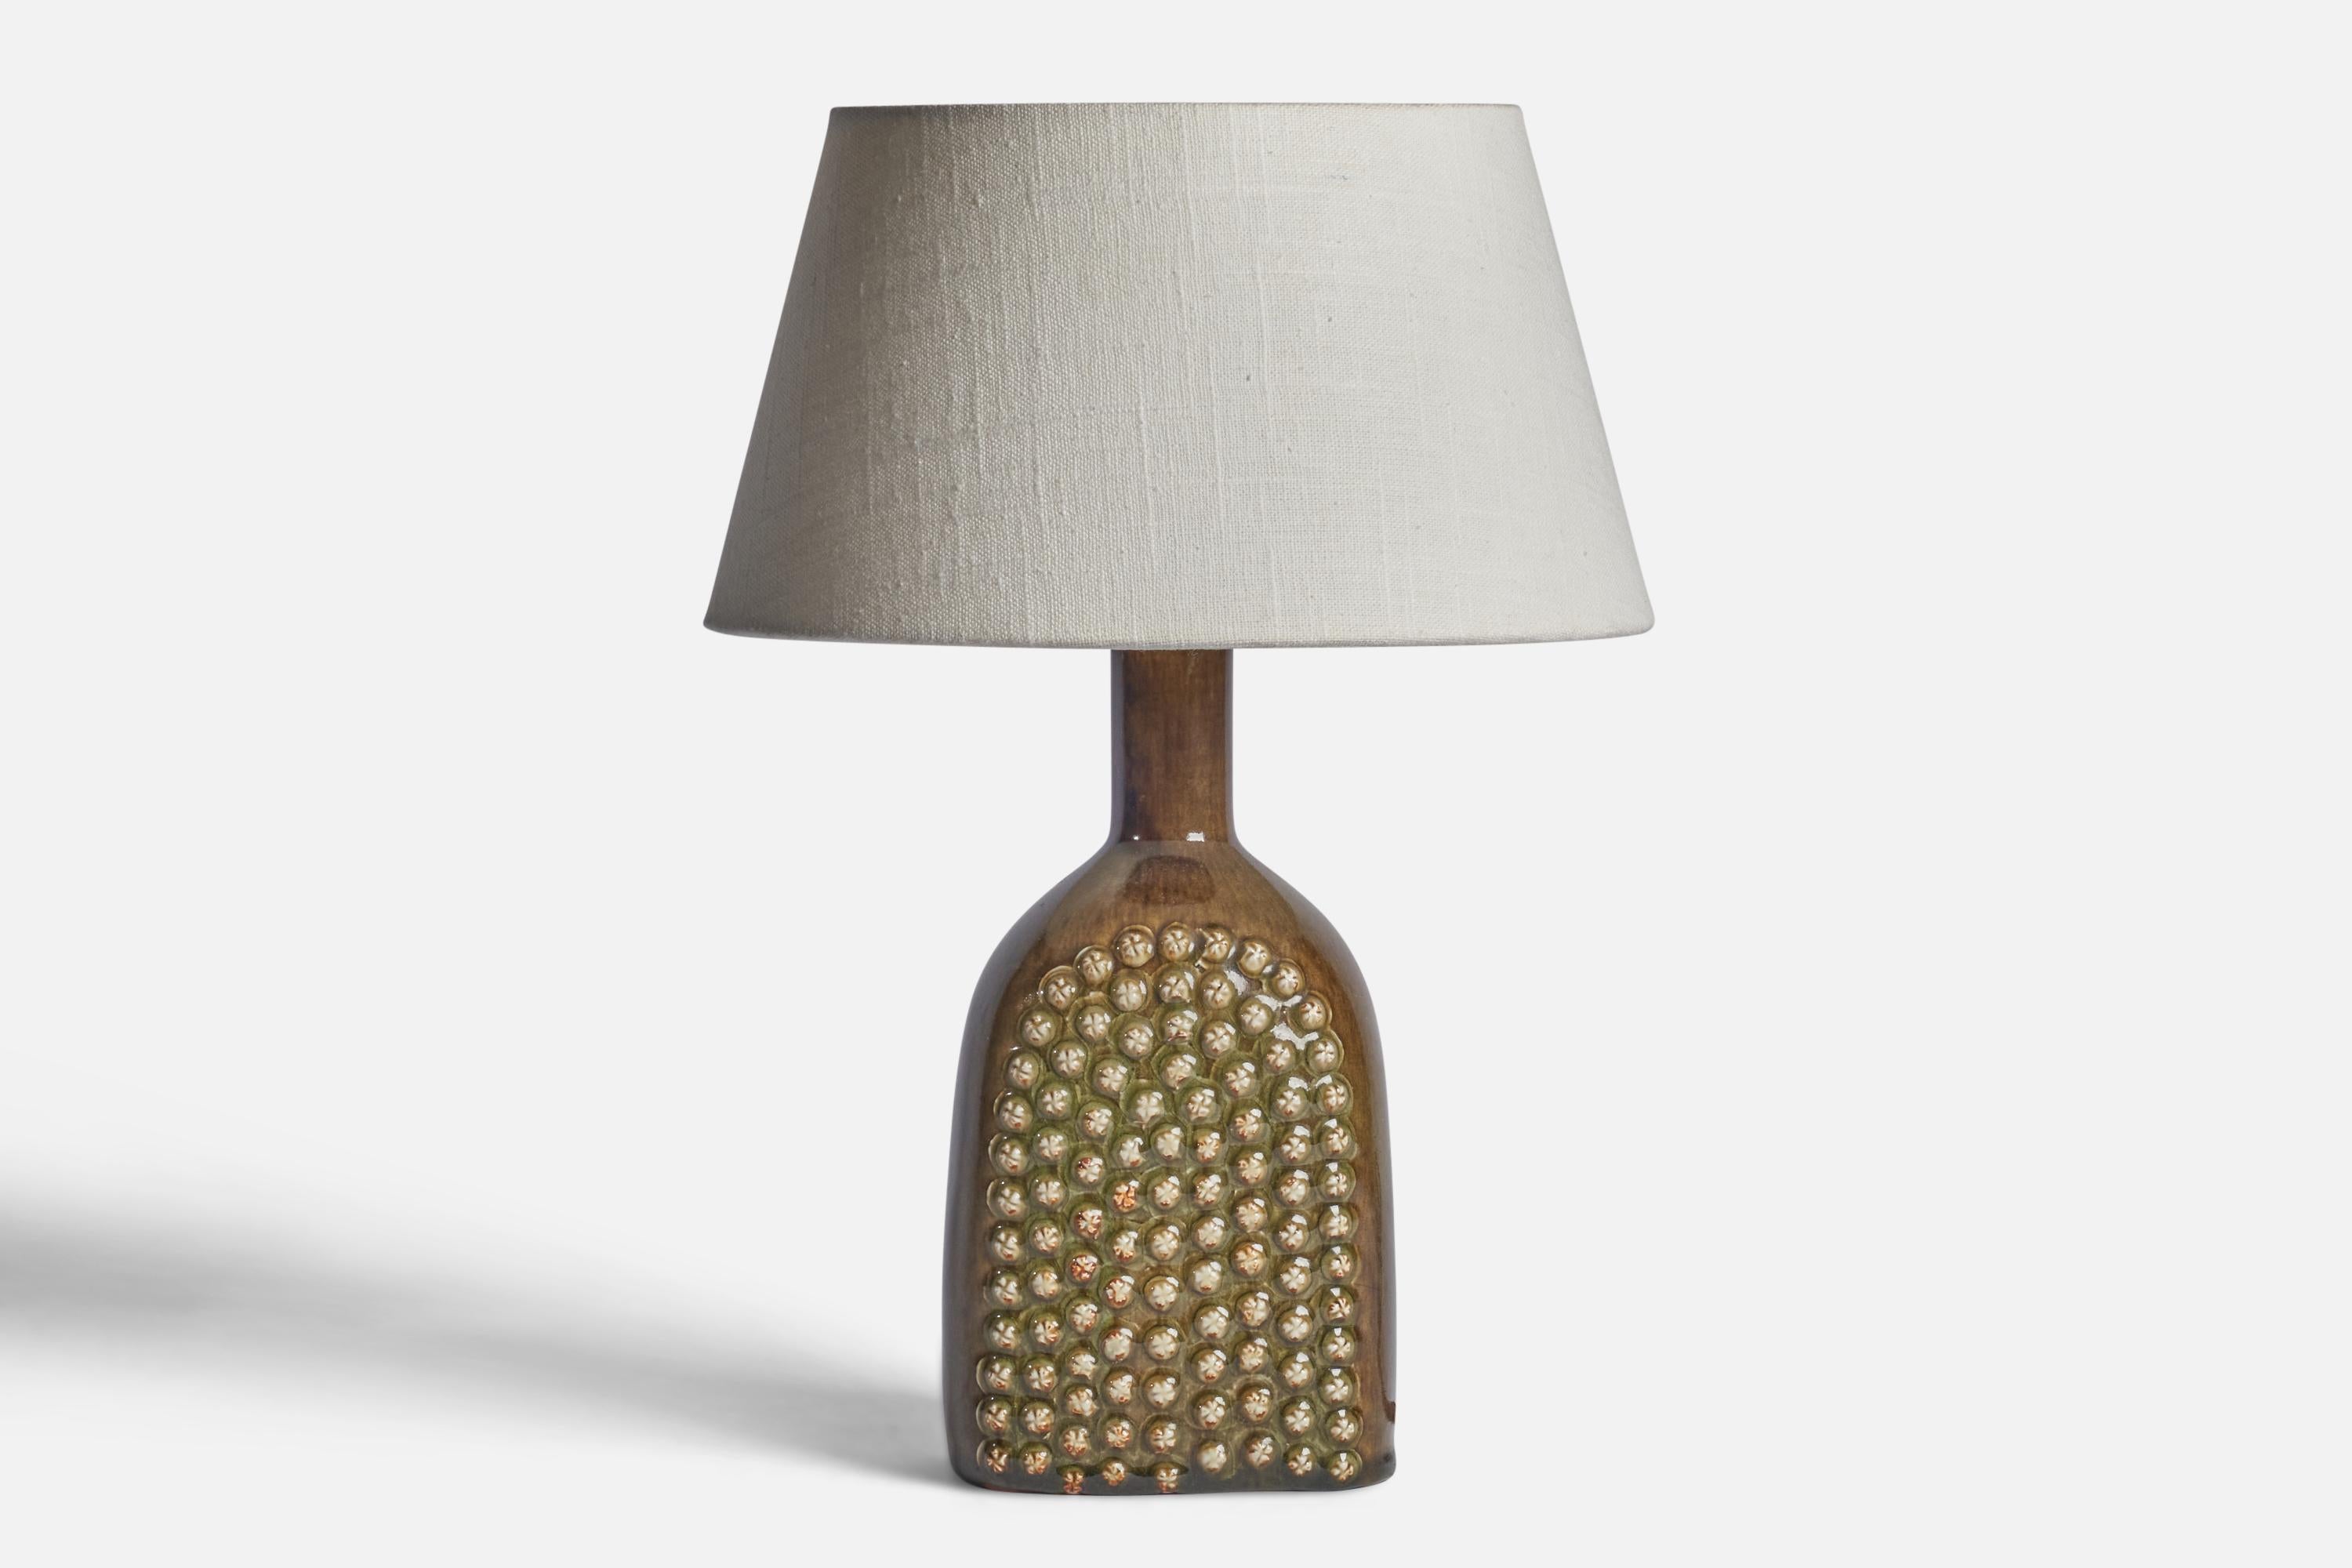 
Lampe de table en grès émaillé beige brun, conçue par Stig Lindberg et produite par Gustavsberg, Suède, années 1950.
Dimensions de la lampe (pouces) : 11.25